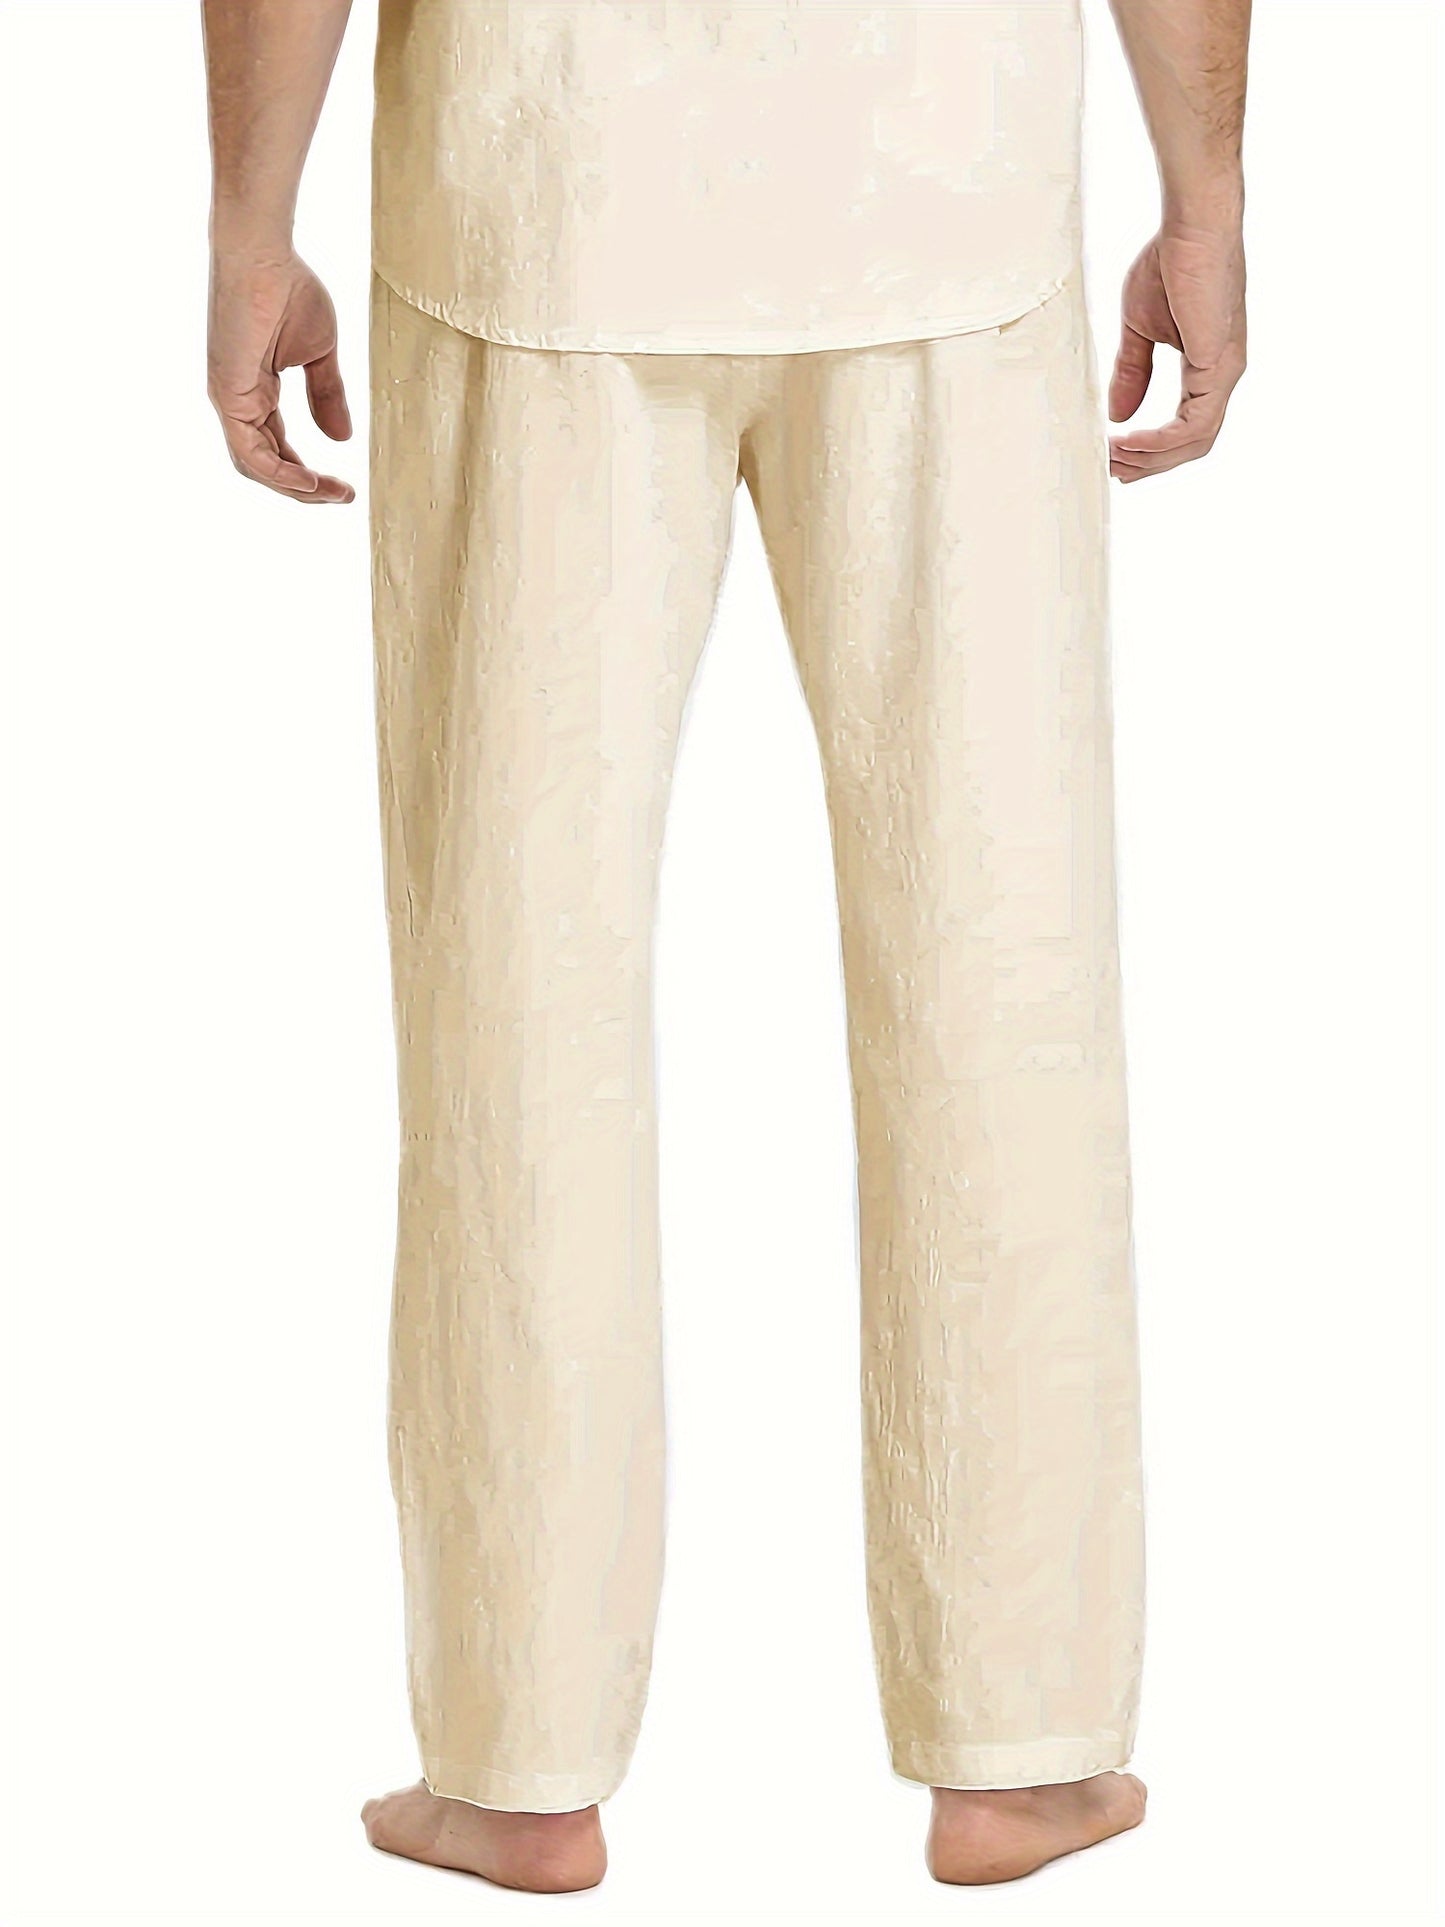 Lässige Herren-Hose aus Baumwolle und Leinen, lockere Passform, gerade Beine, elastischer Kordelzug in der Taille, lässige Jogger-Yoga-Lange Hose